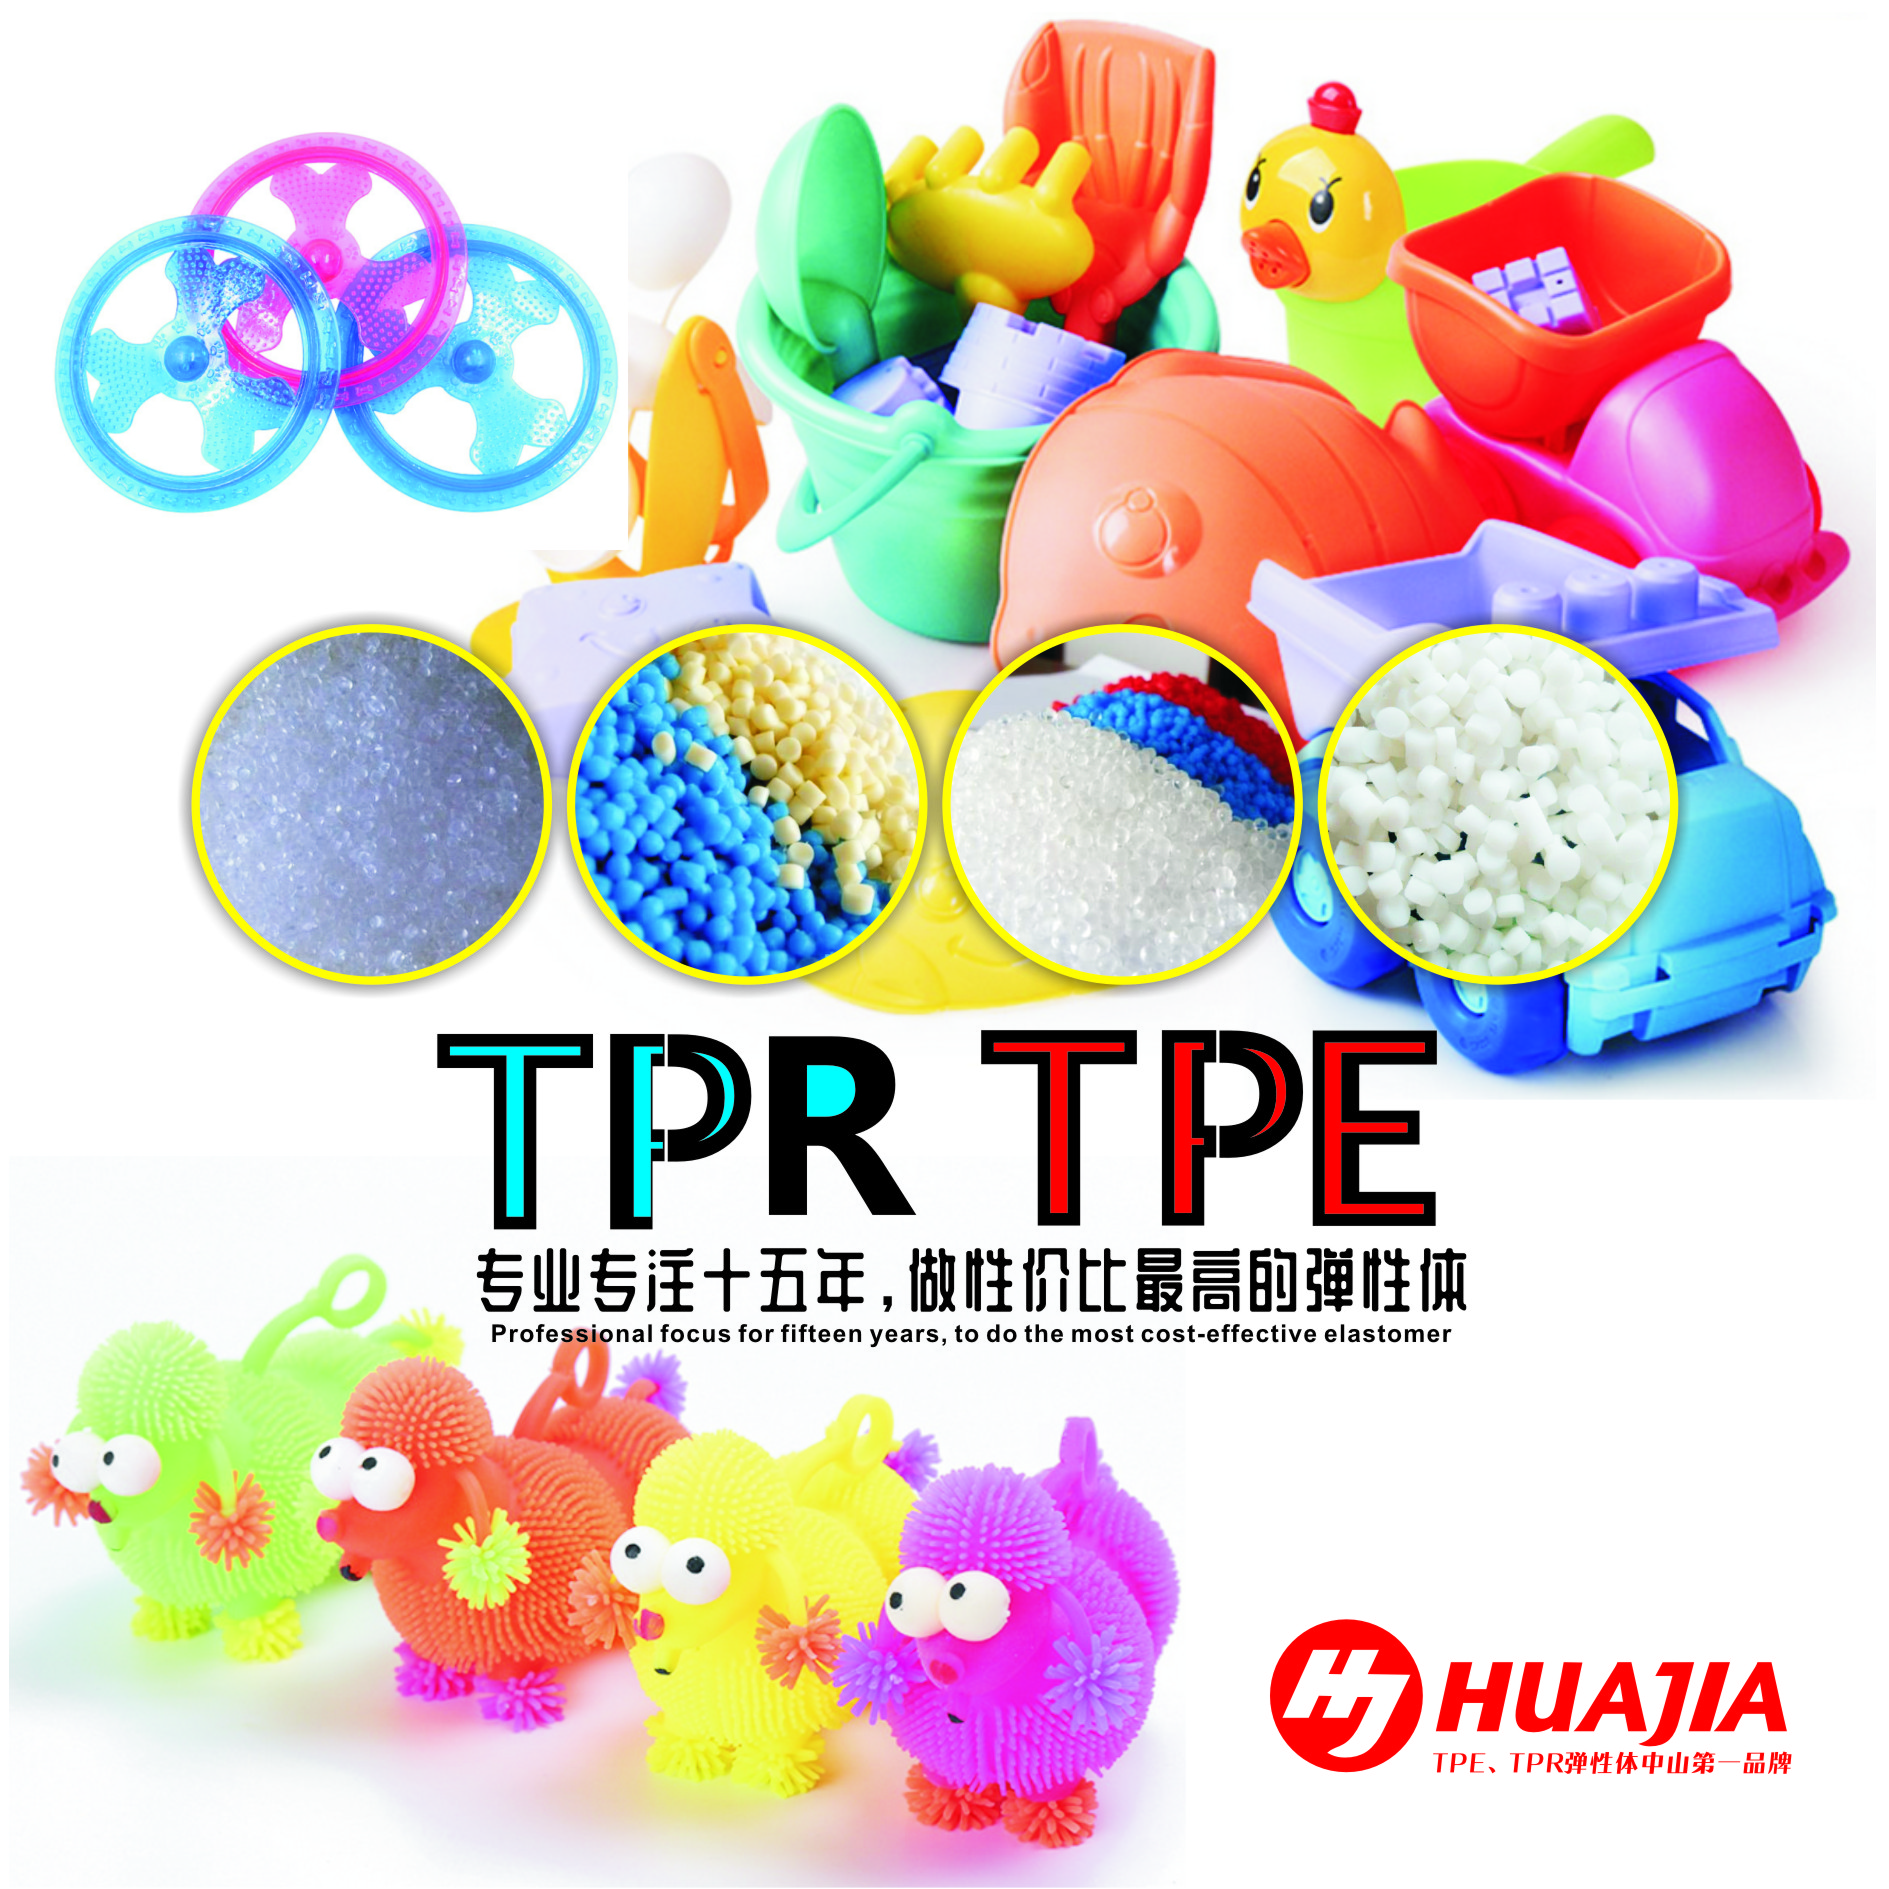 中山市儿童玩具TPE原料供应商 江门市儿童玩具TPE原料价格 佛山市儿童玩具TPE原料报价